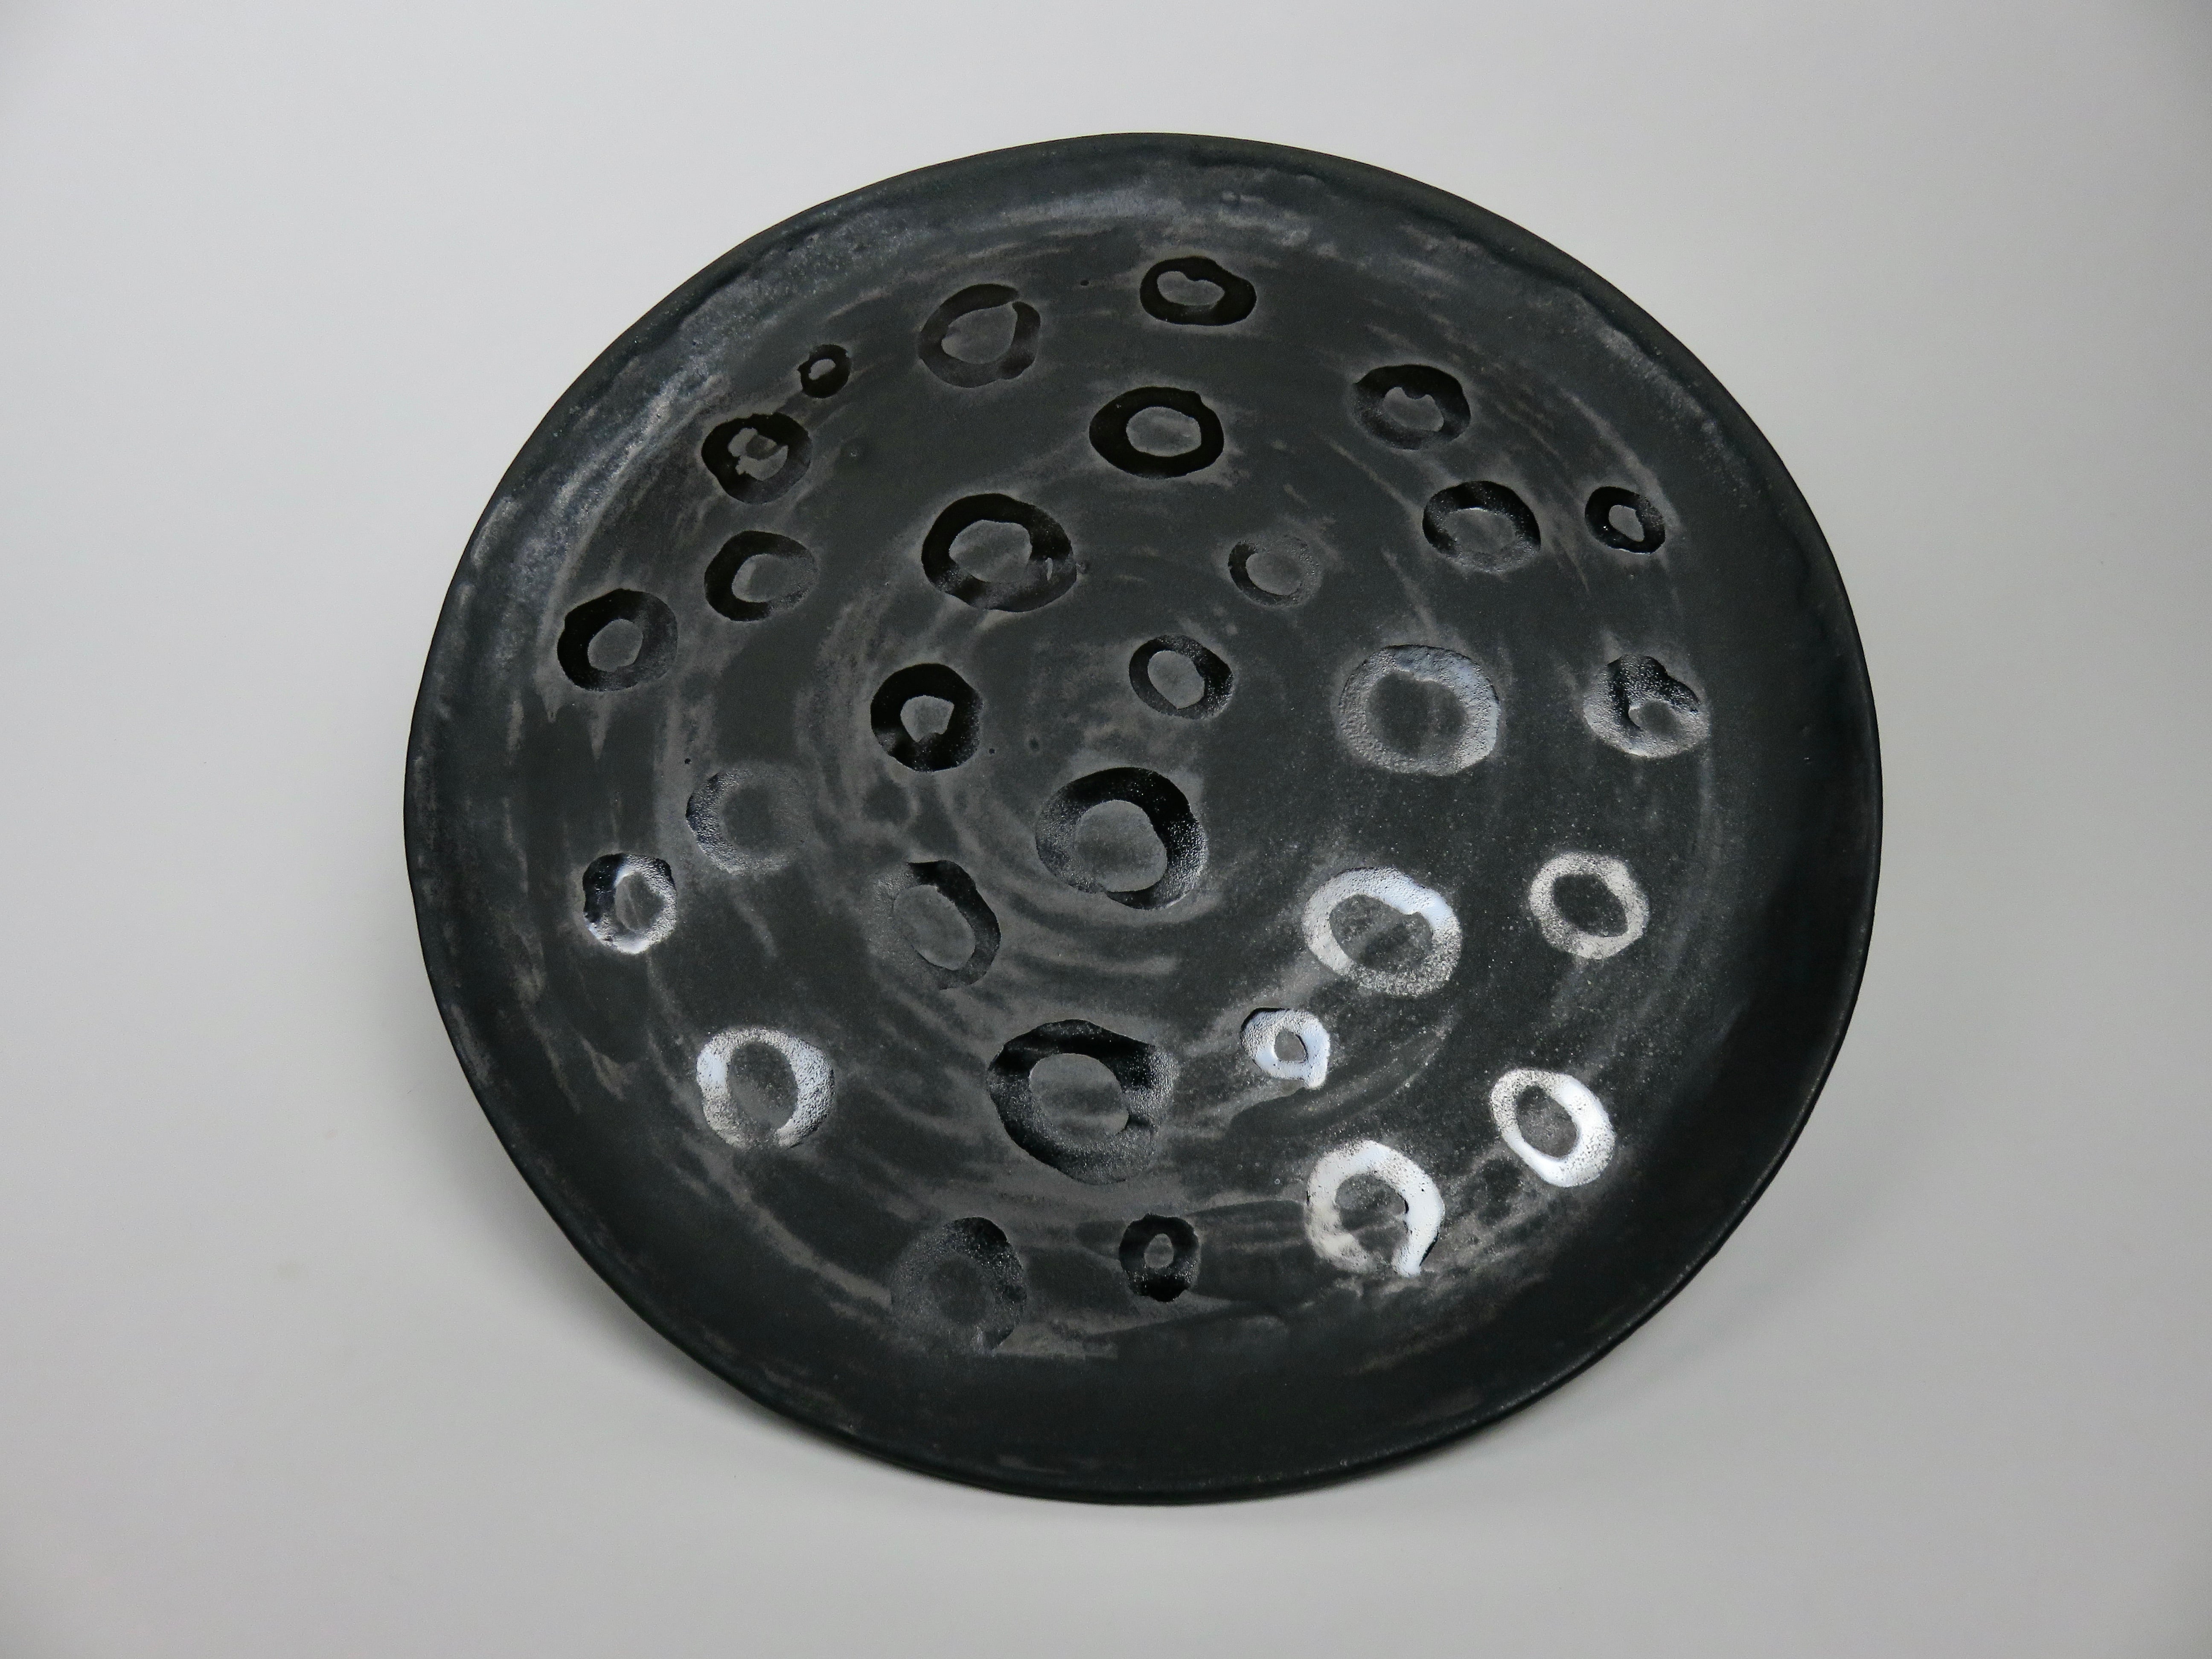 Das perfekte Hochzeitsgeschenk!
Ein vollständig handgefertigter Keramikteller aus dunklem Ton mit schwarzer Glasur und metallisch schwarzer, handgemalter Dekoration.  Dies ist eine einzigartige Kreation, die von der Künstlerin Helena Starcevic in